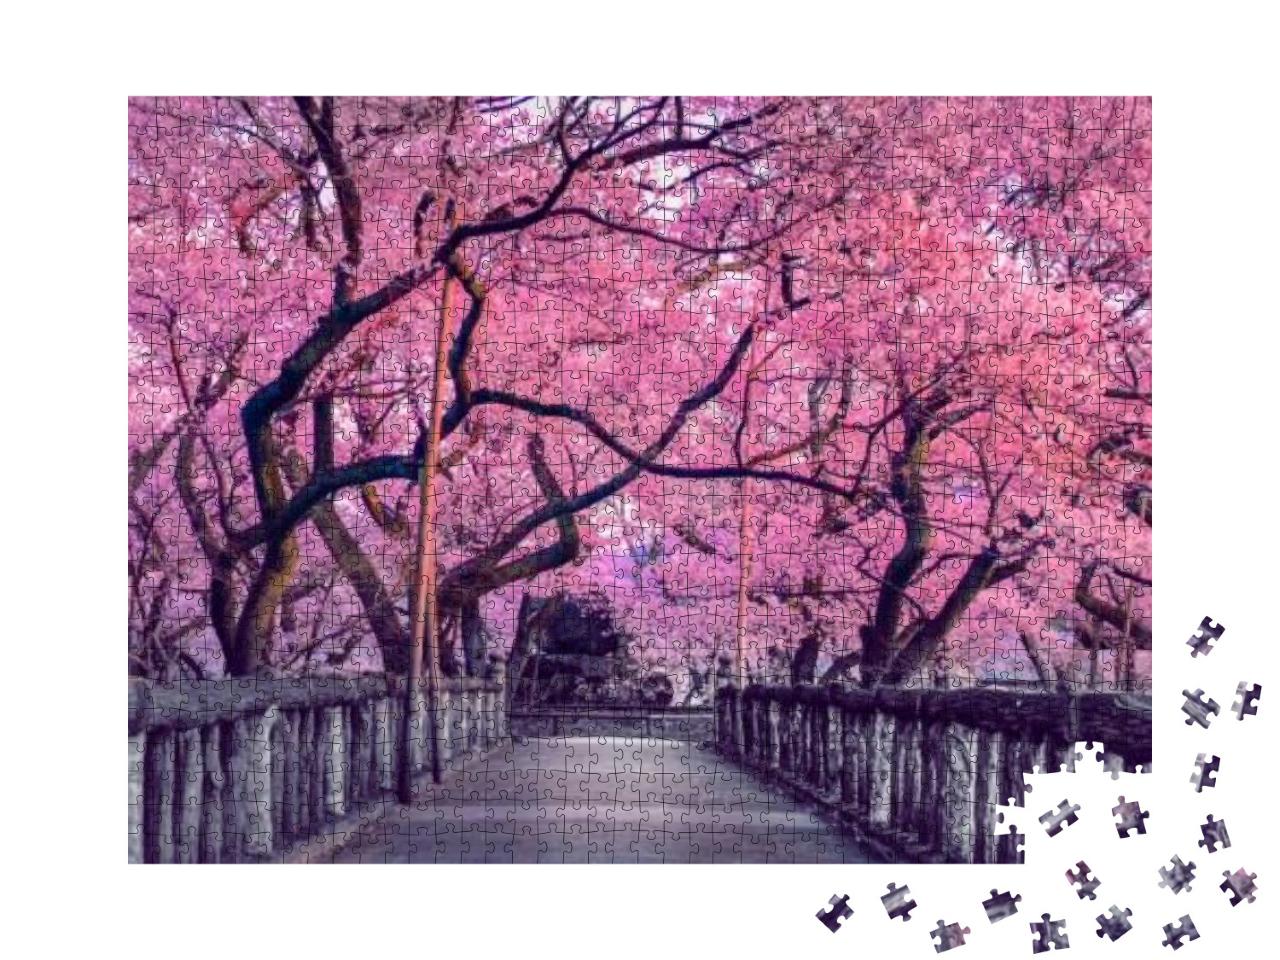 Puzzle 1000 Teile „Wunderschöne Kirschblüte über einer alten Holzbrücke, Japan“